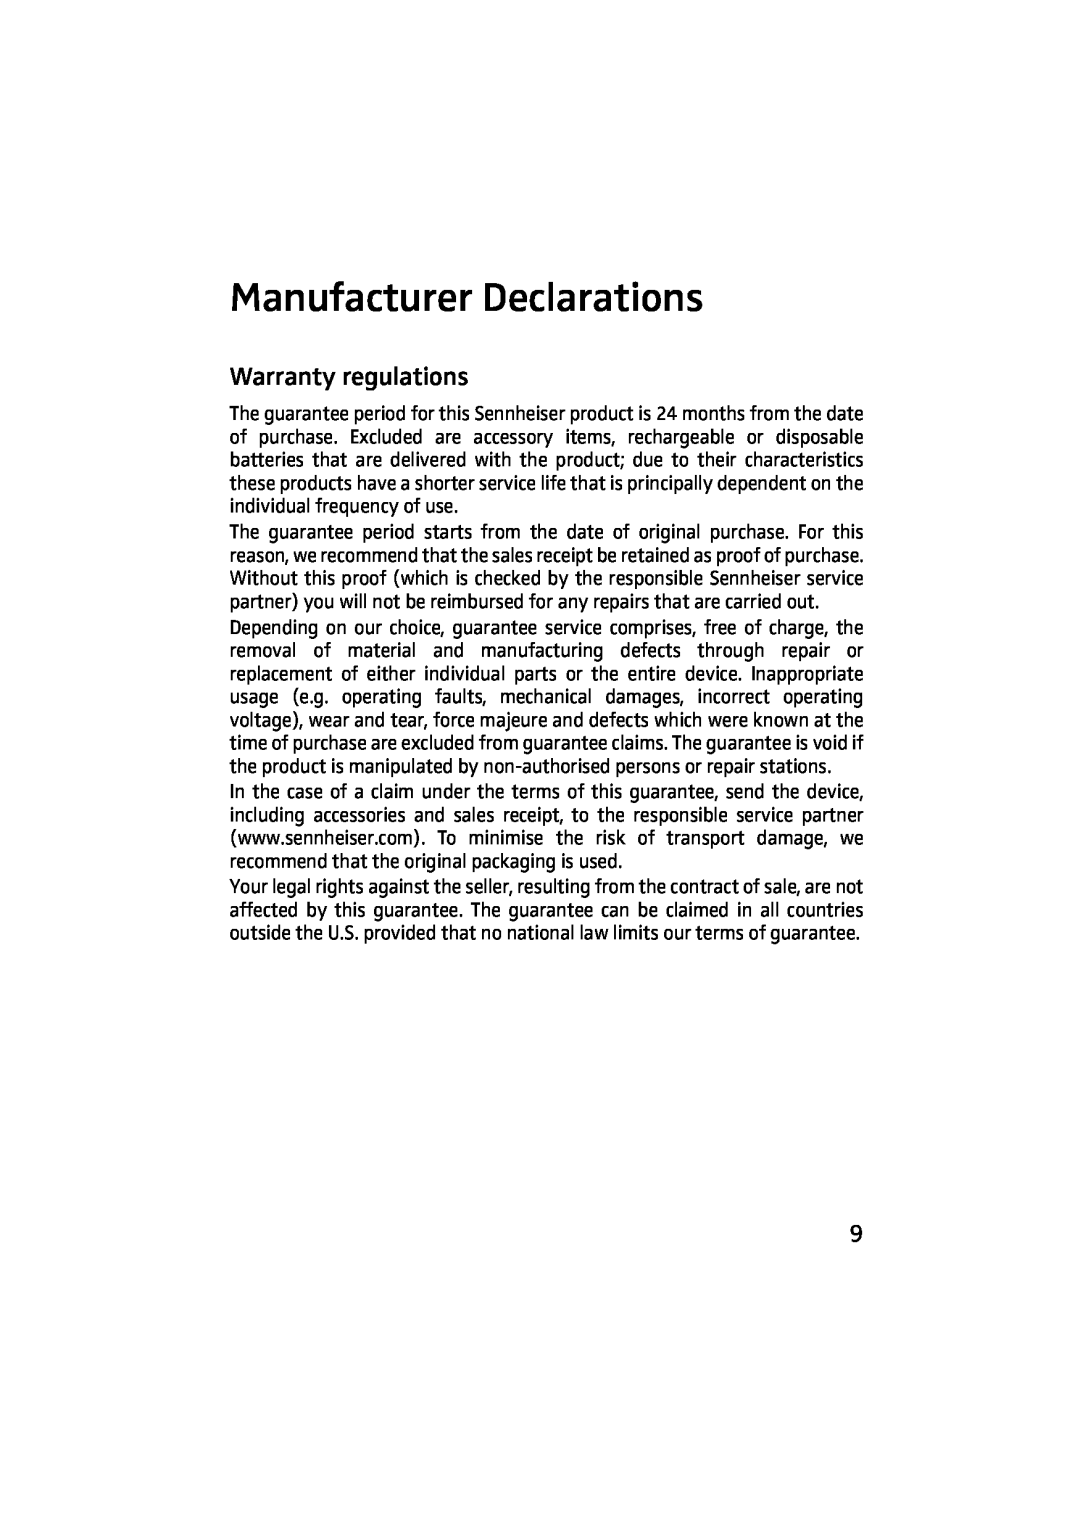 Sennheiser HME 43-K manual Manufacturer Declarations, Warranty regulations 